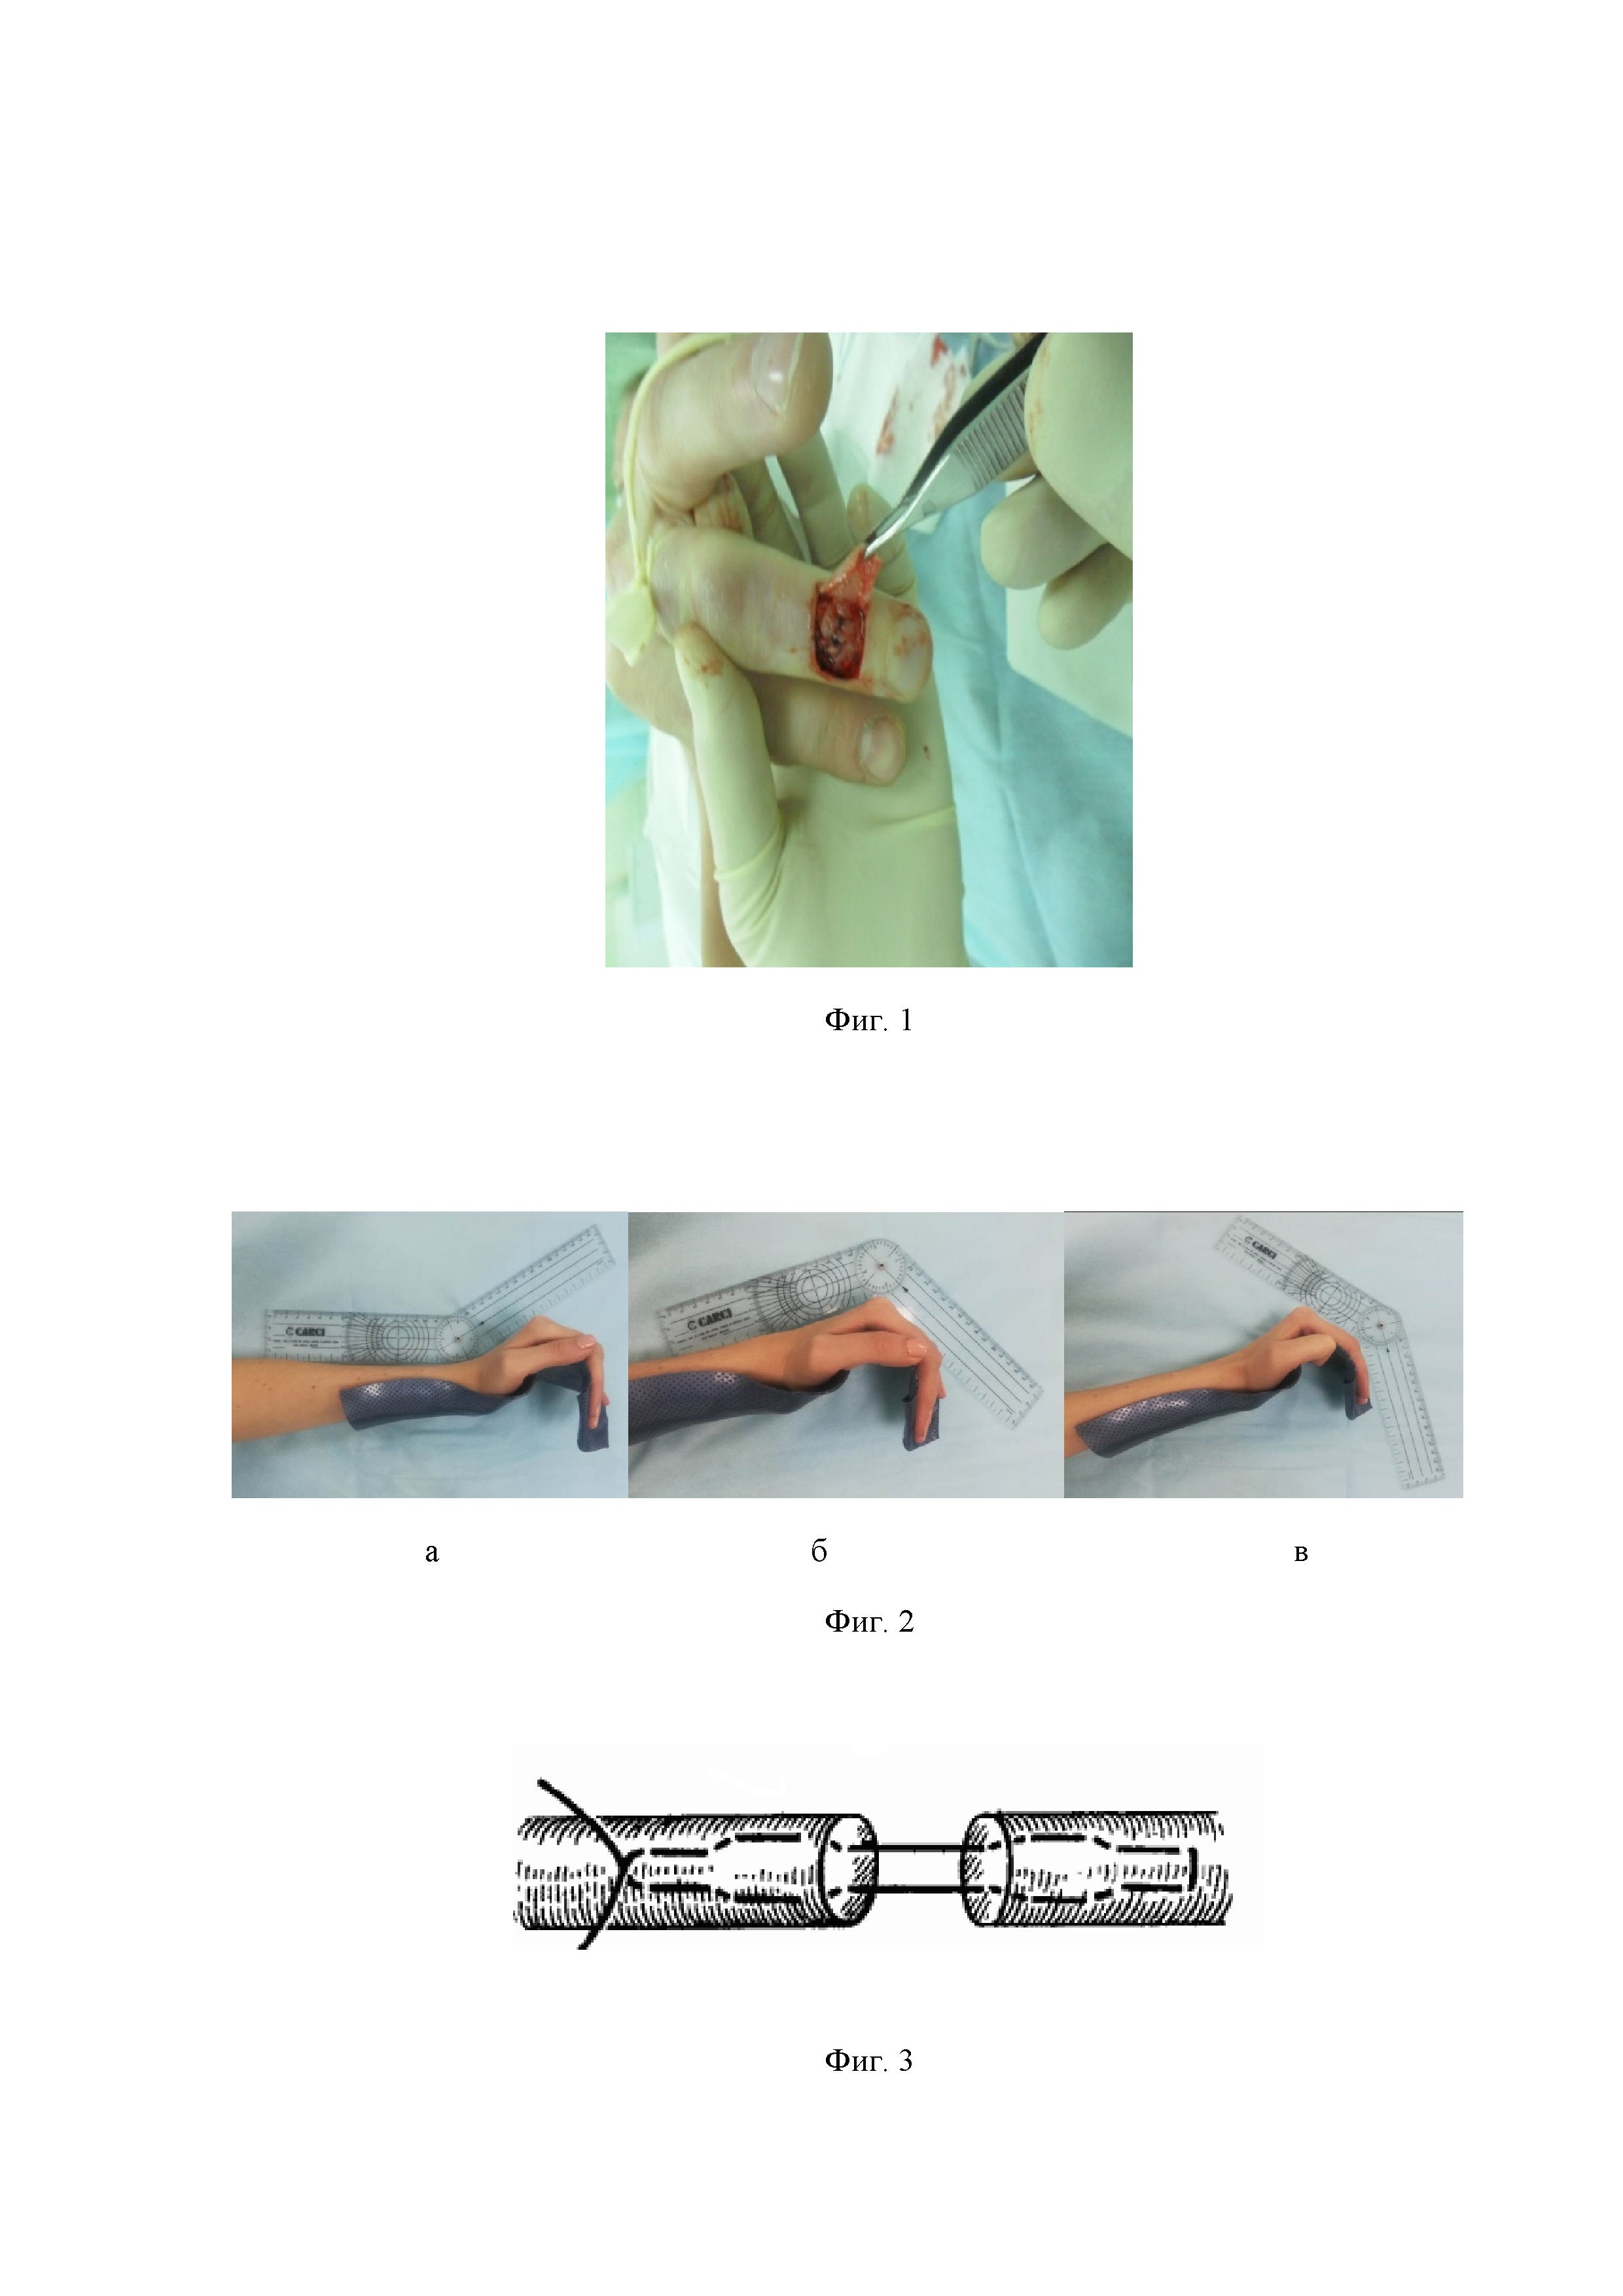 Способ восстановления сухожилий разгибателей пальцев кисти на уровне дистального межфалангового сустава (варианты)